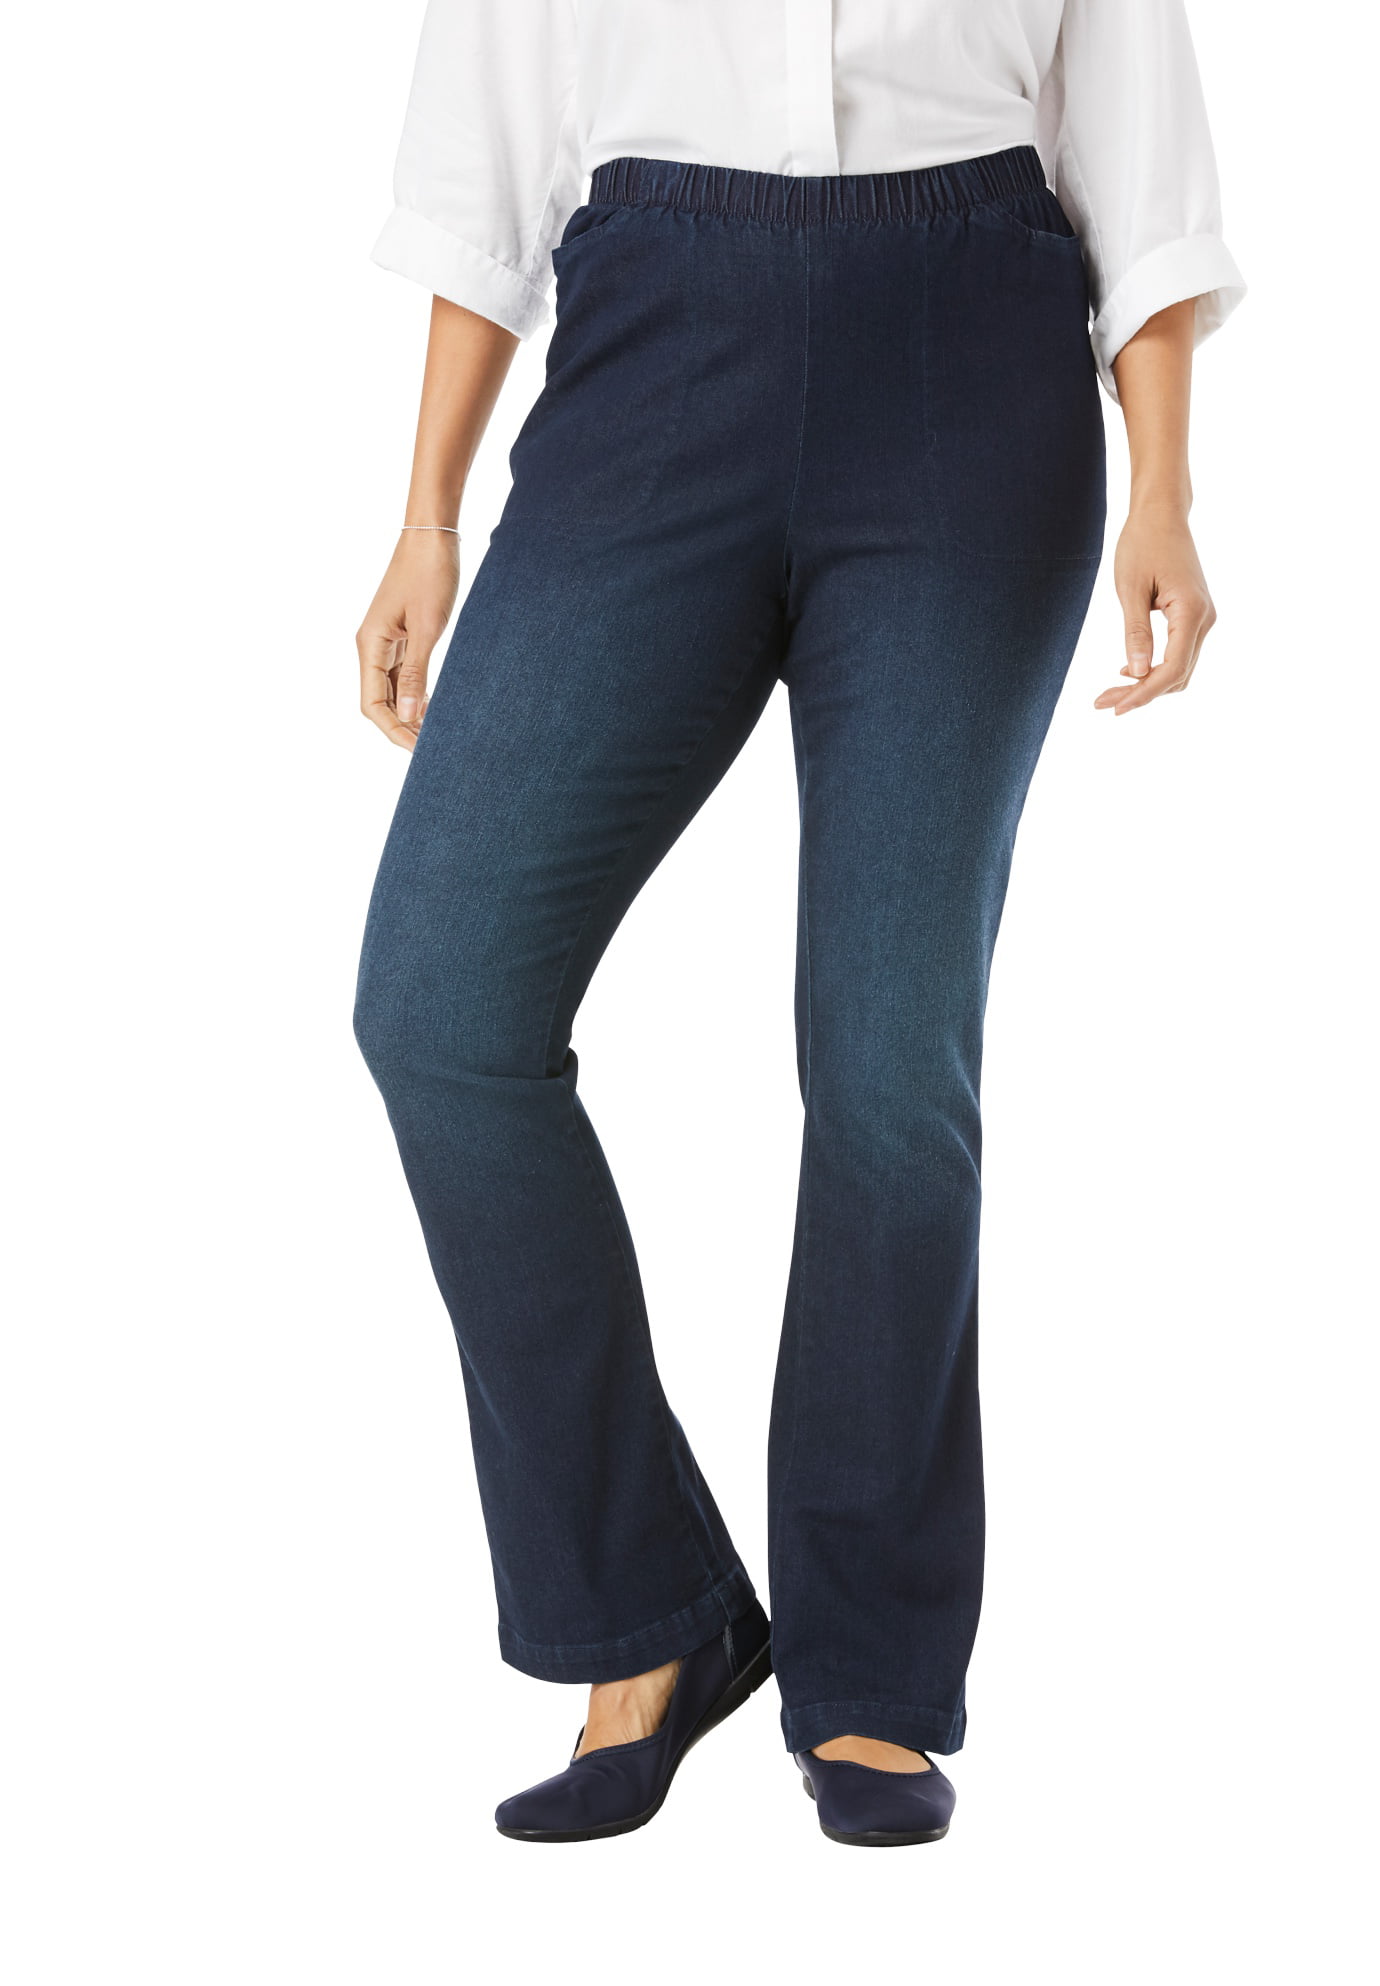 walmart women's plus size jeans